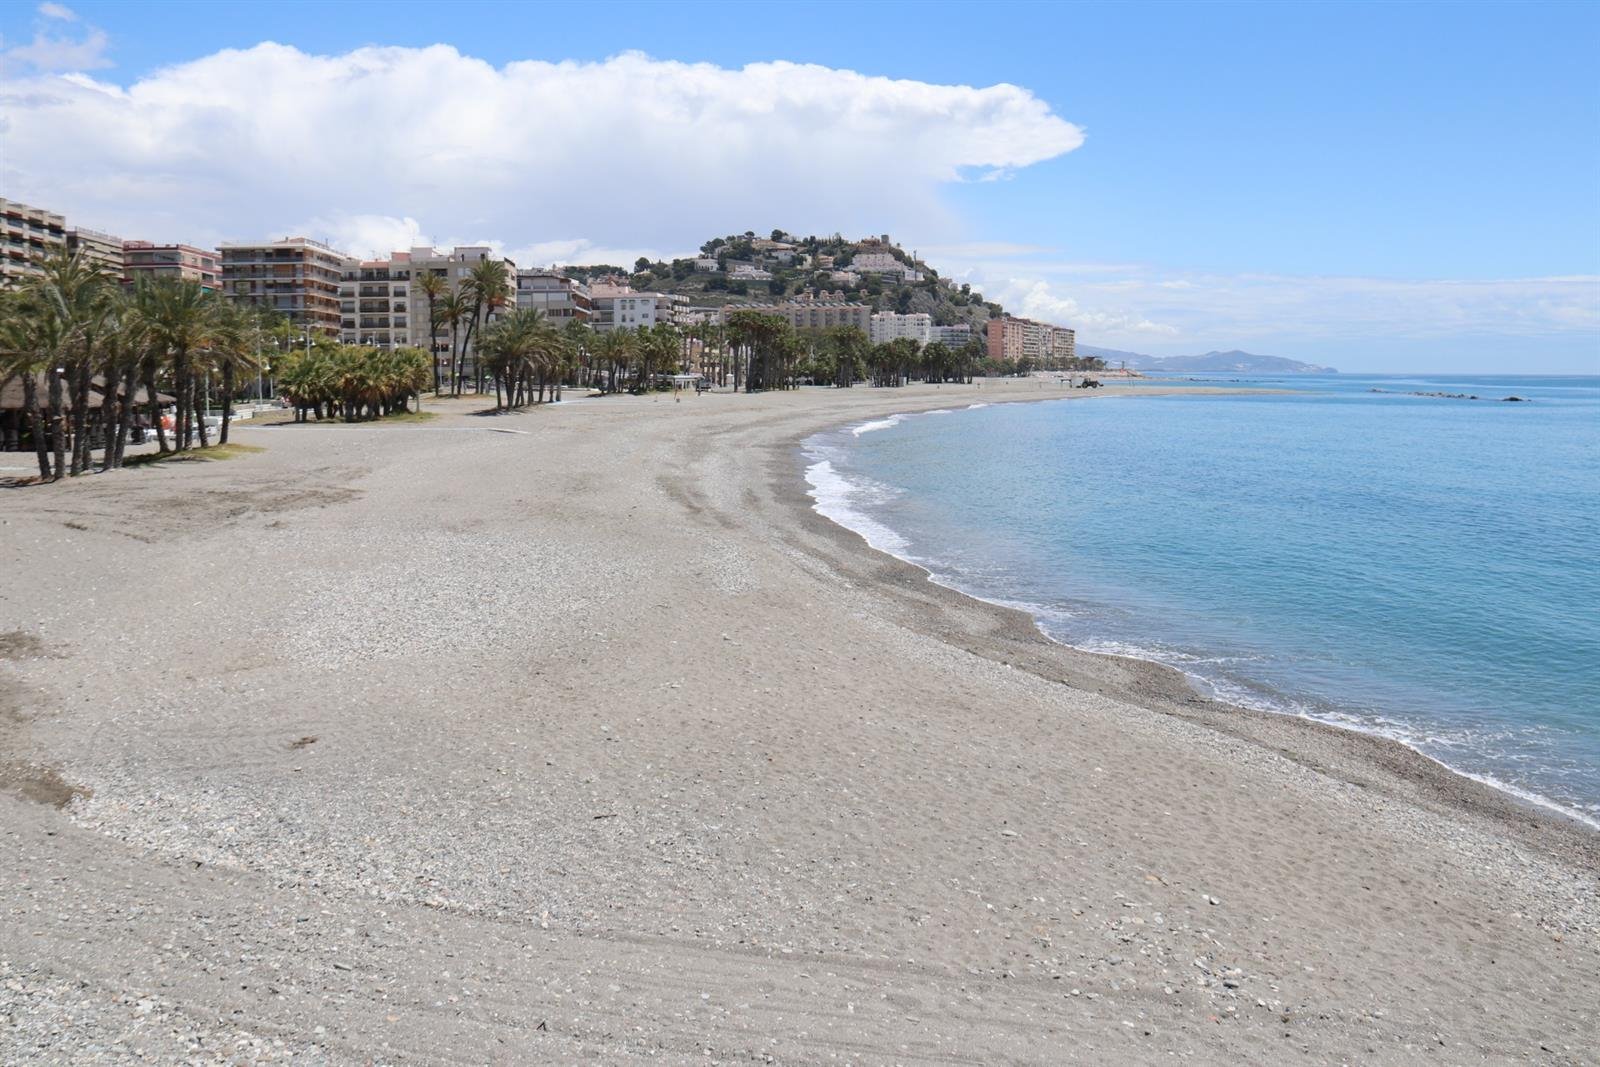 El PSOE asegura que la convocatoria de empleo de la Junta para vigilar las playas “ningunea” a los ayuntamientos